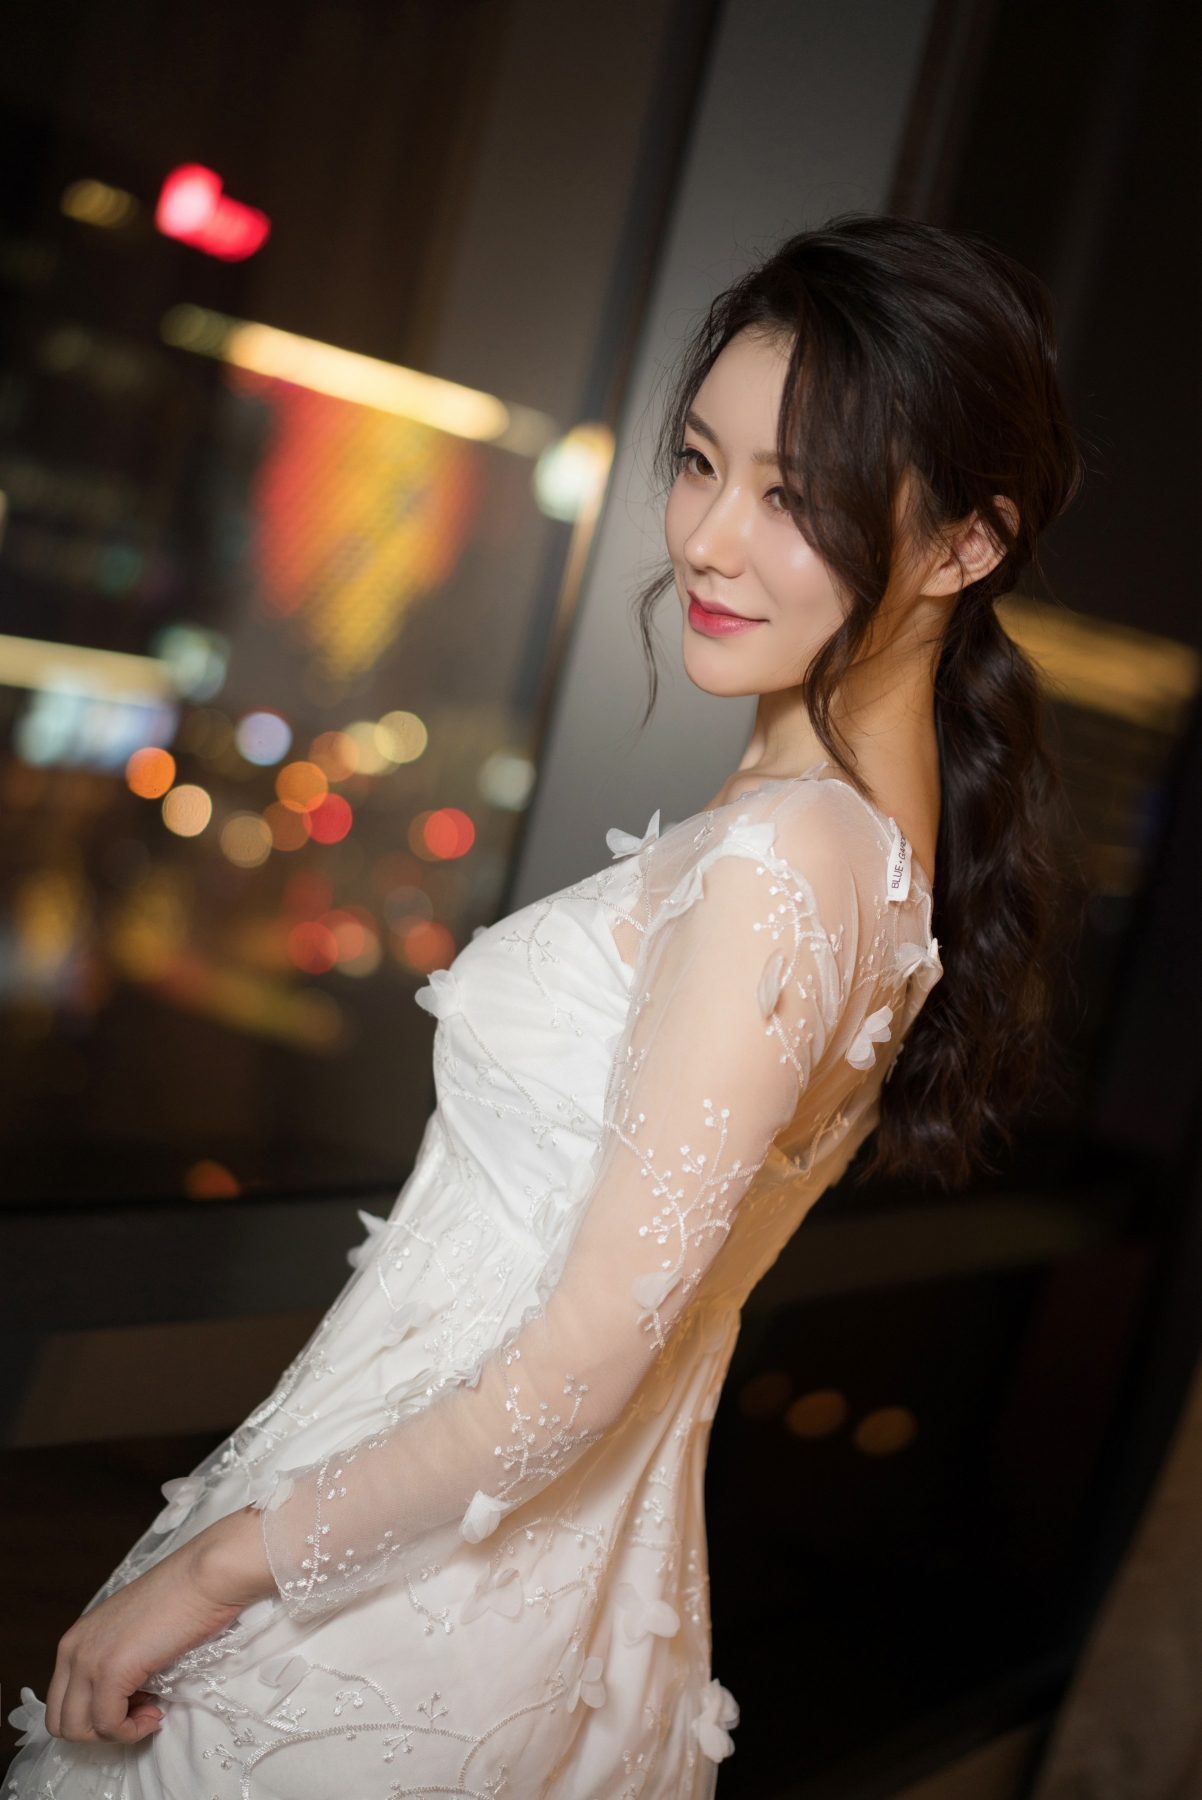 克拉女神江琴 白色礼服裙子4k手机壁纸美女